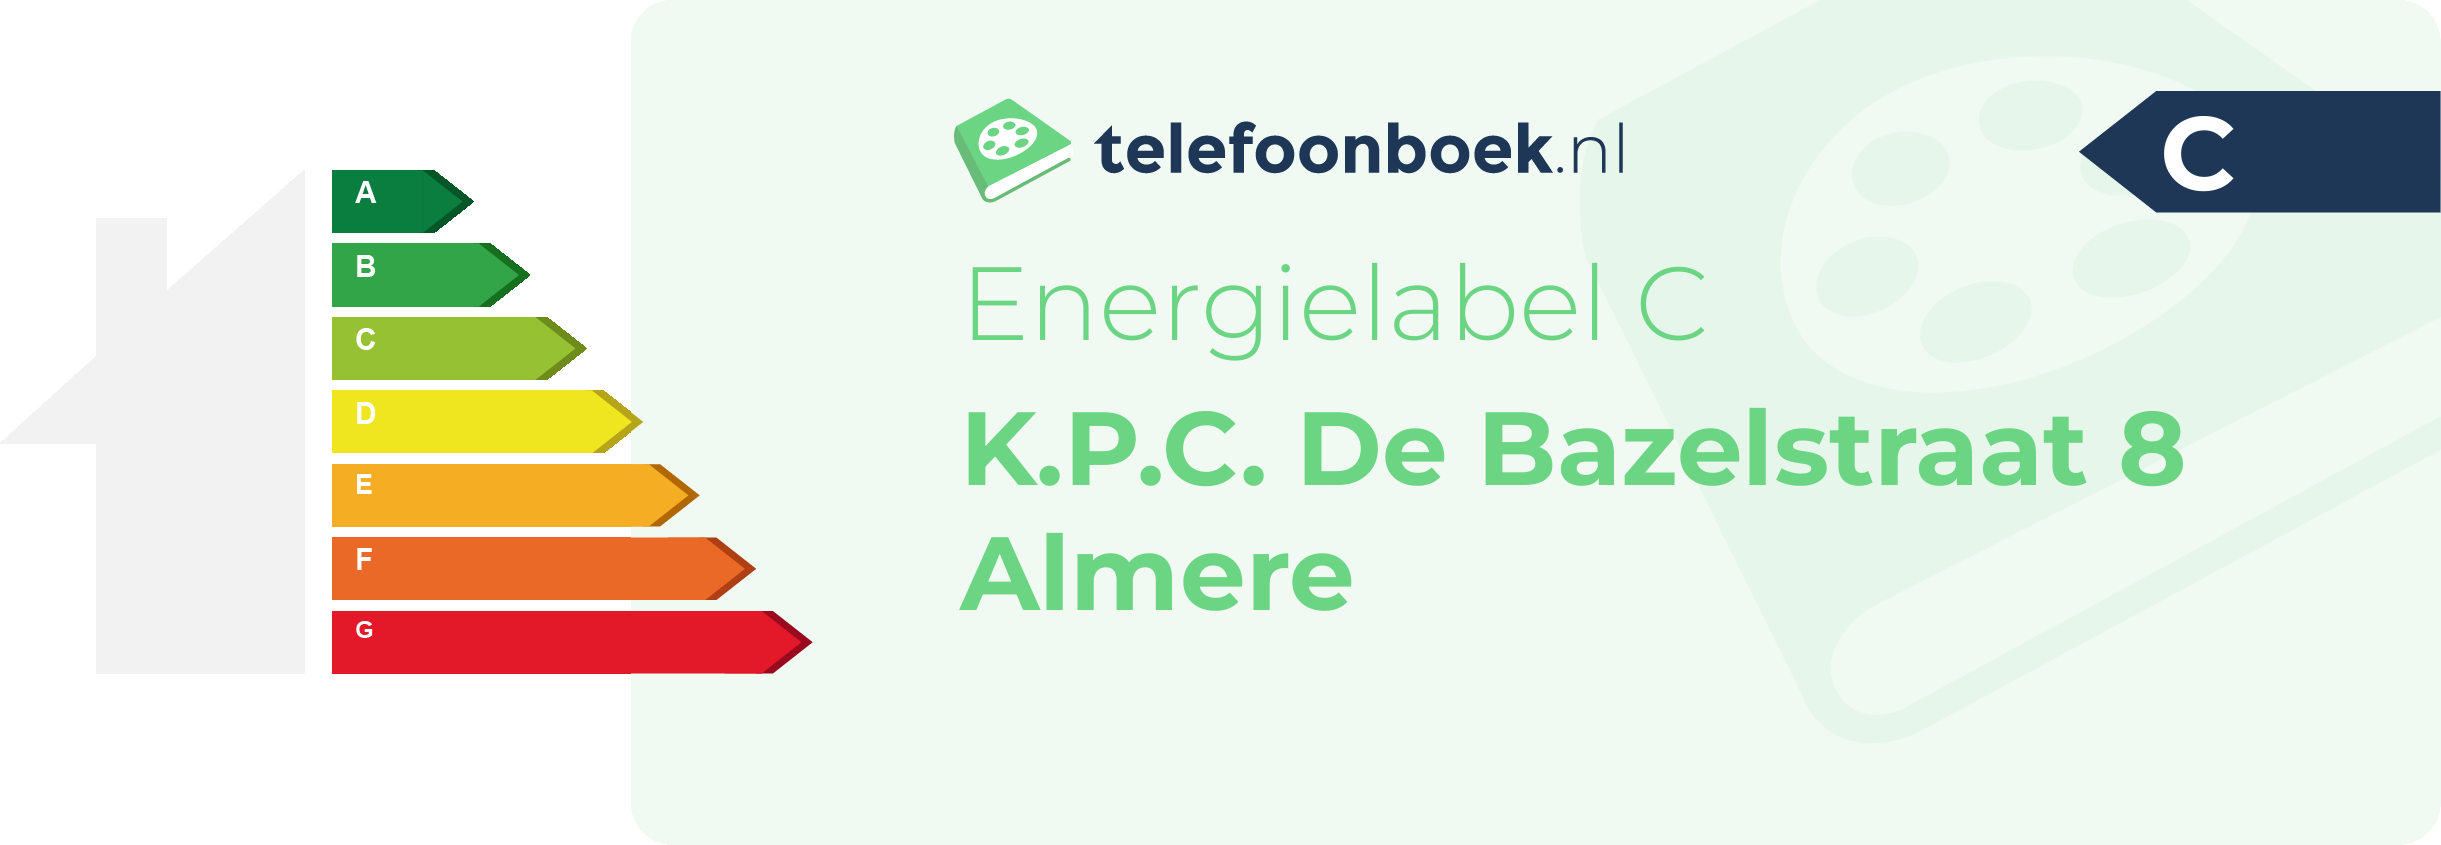 Energielabel K.P.C. De Bazelstraat 8 Almere